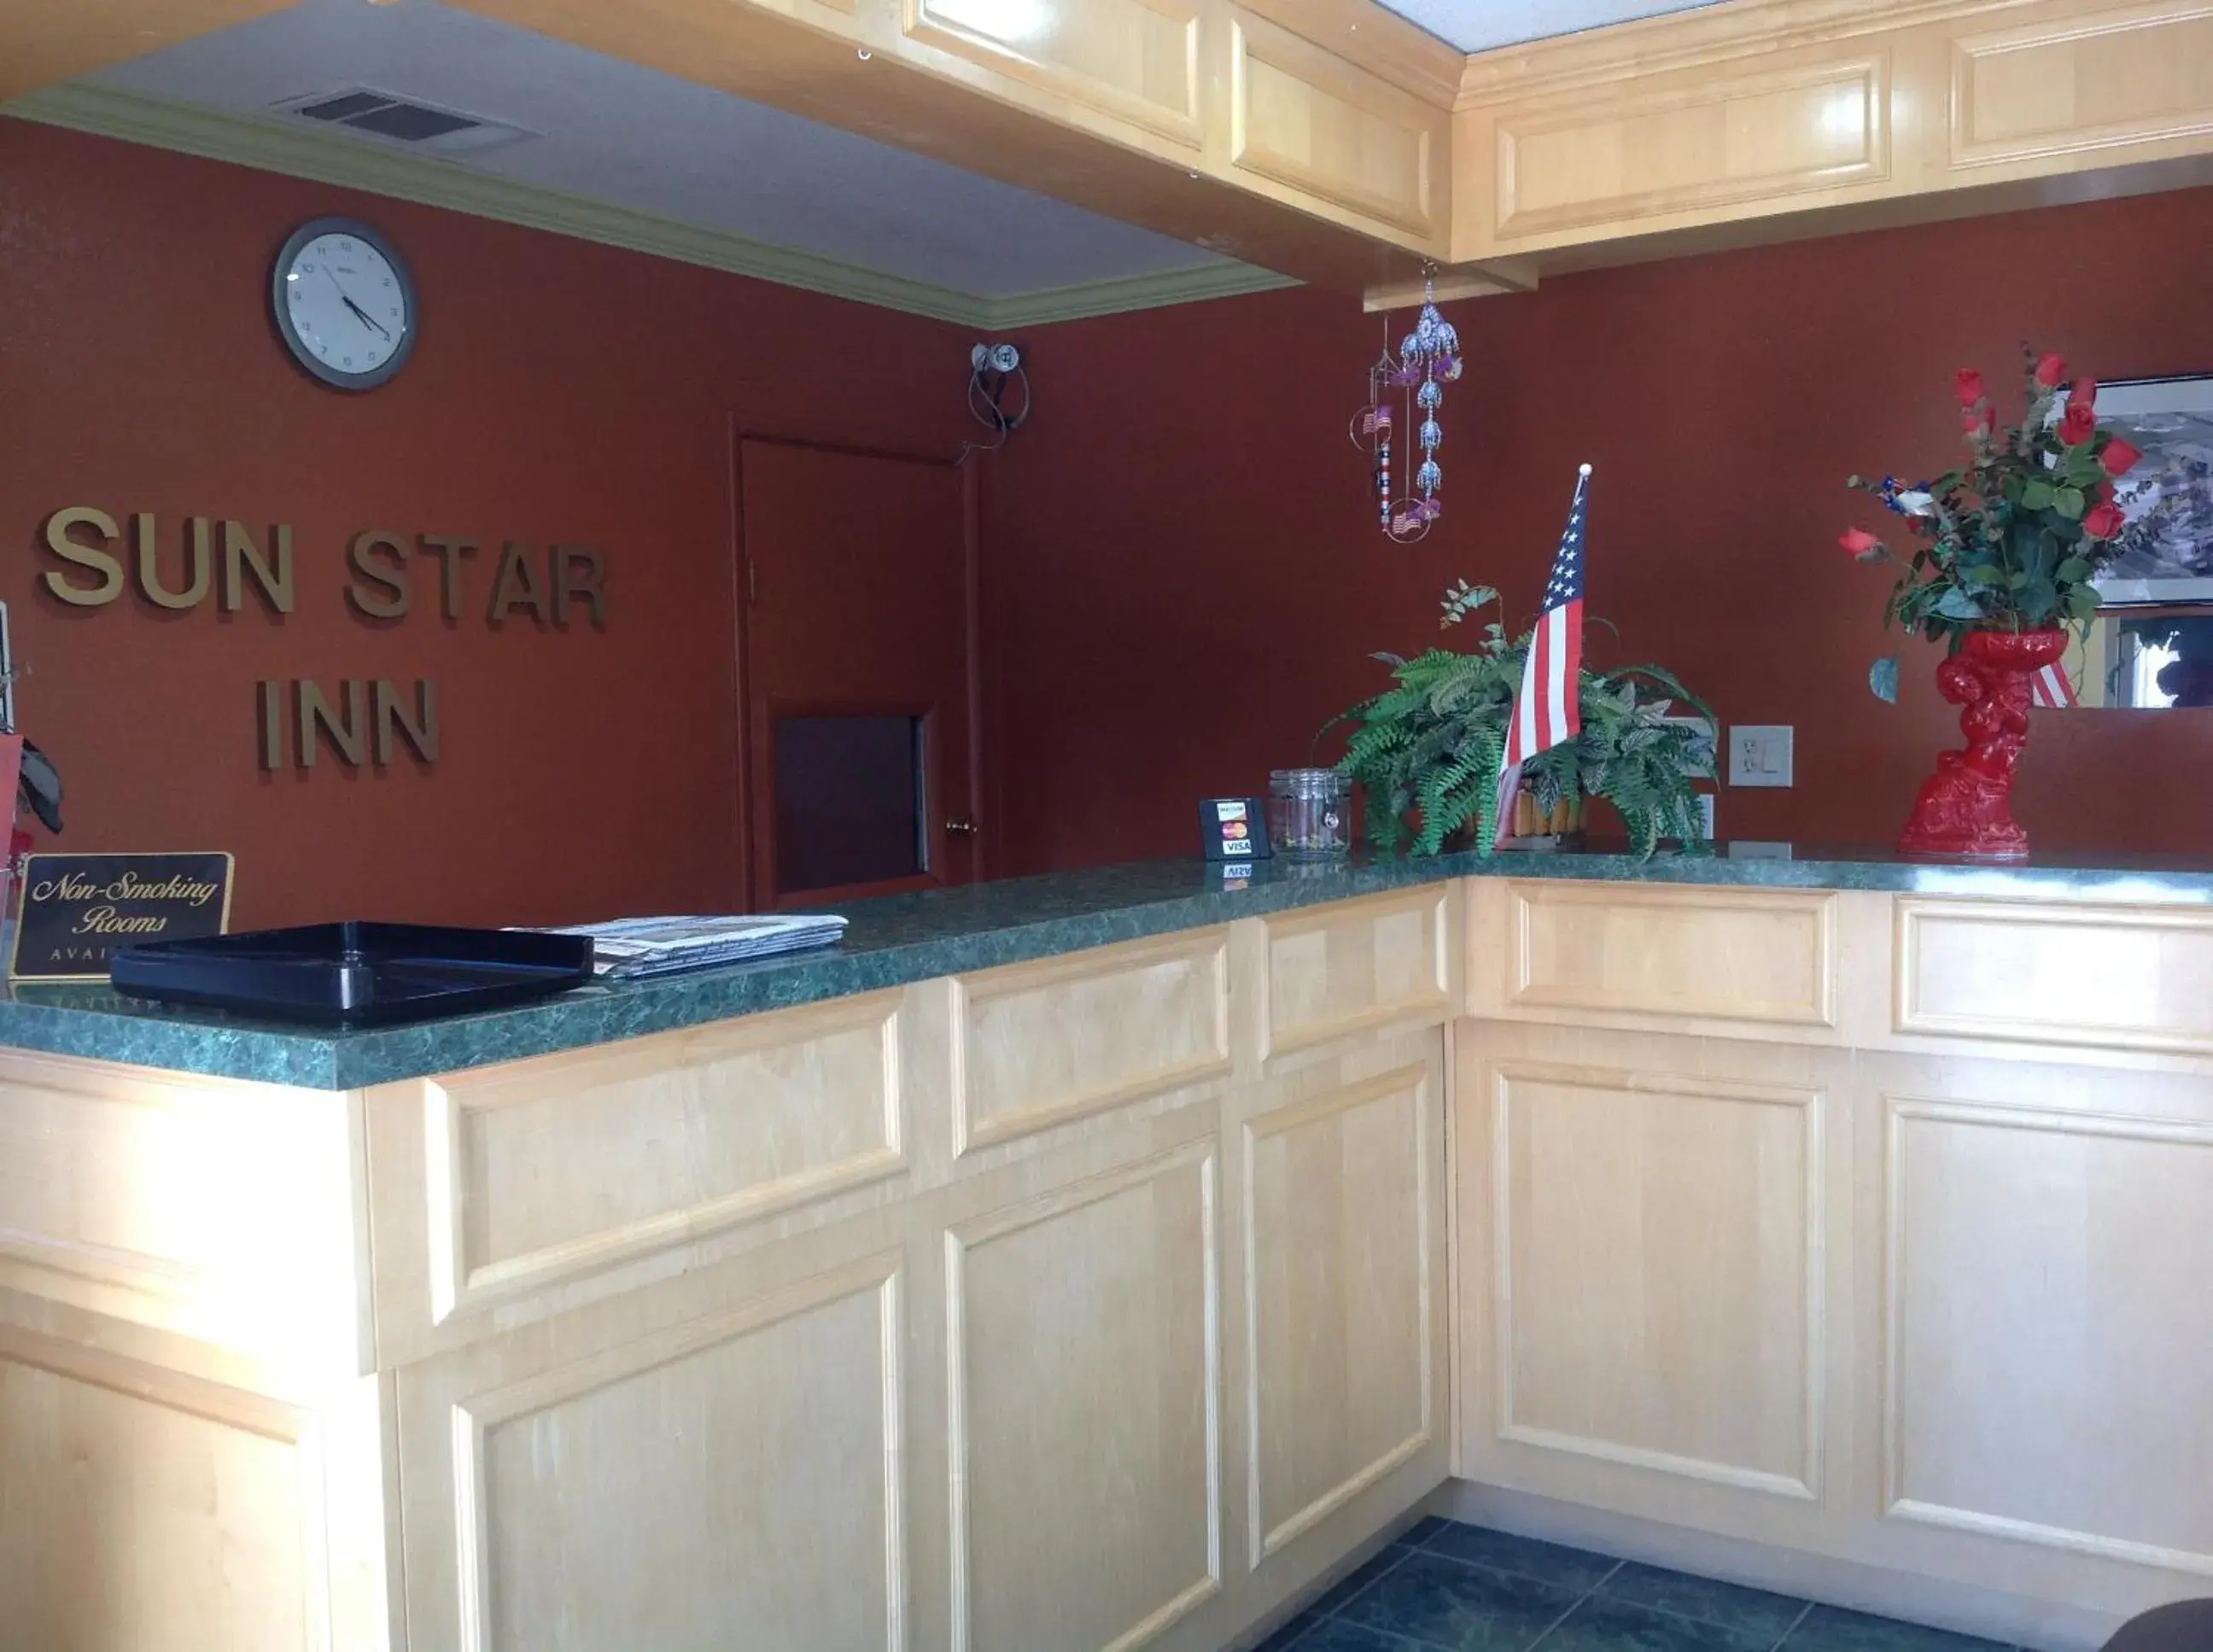 Lobby or reception, Lobby/Reception in Sun Star Inn